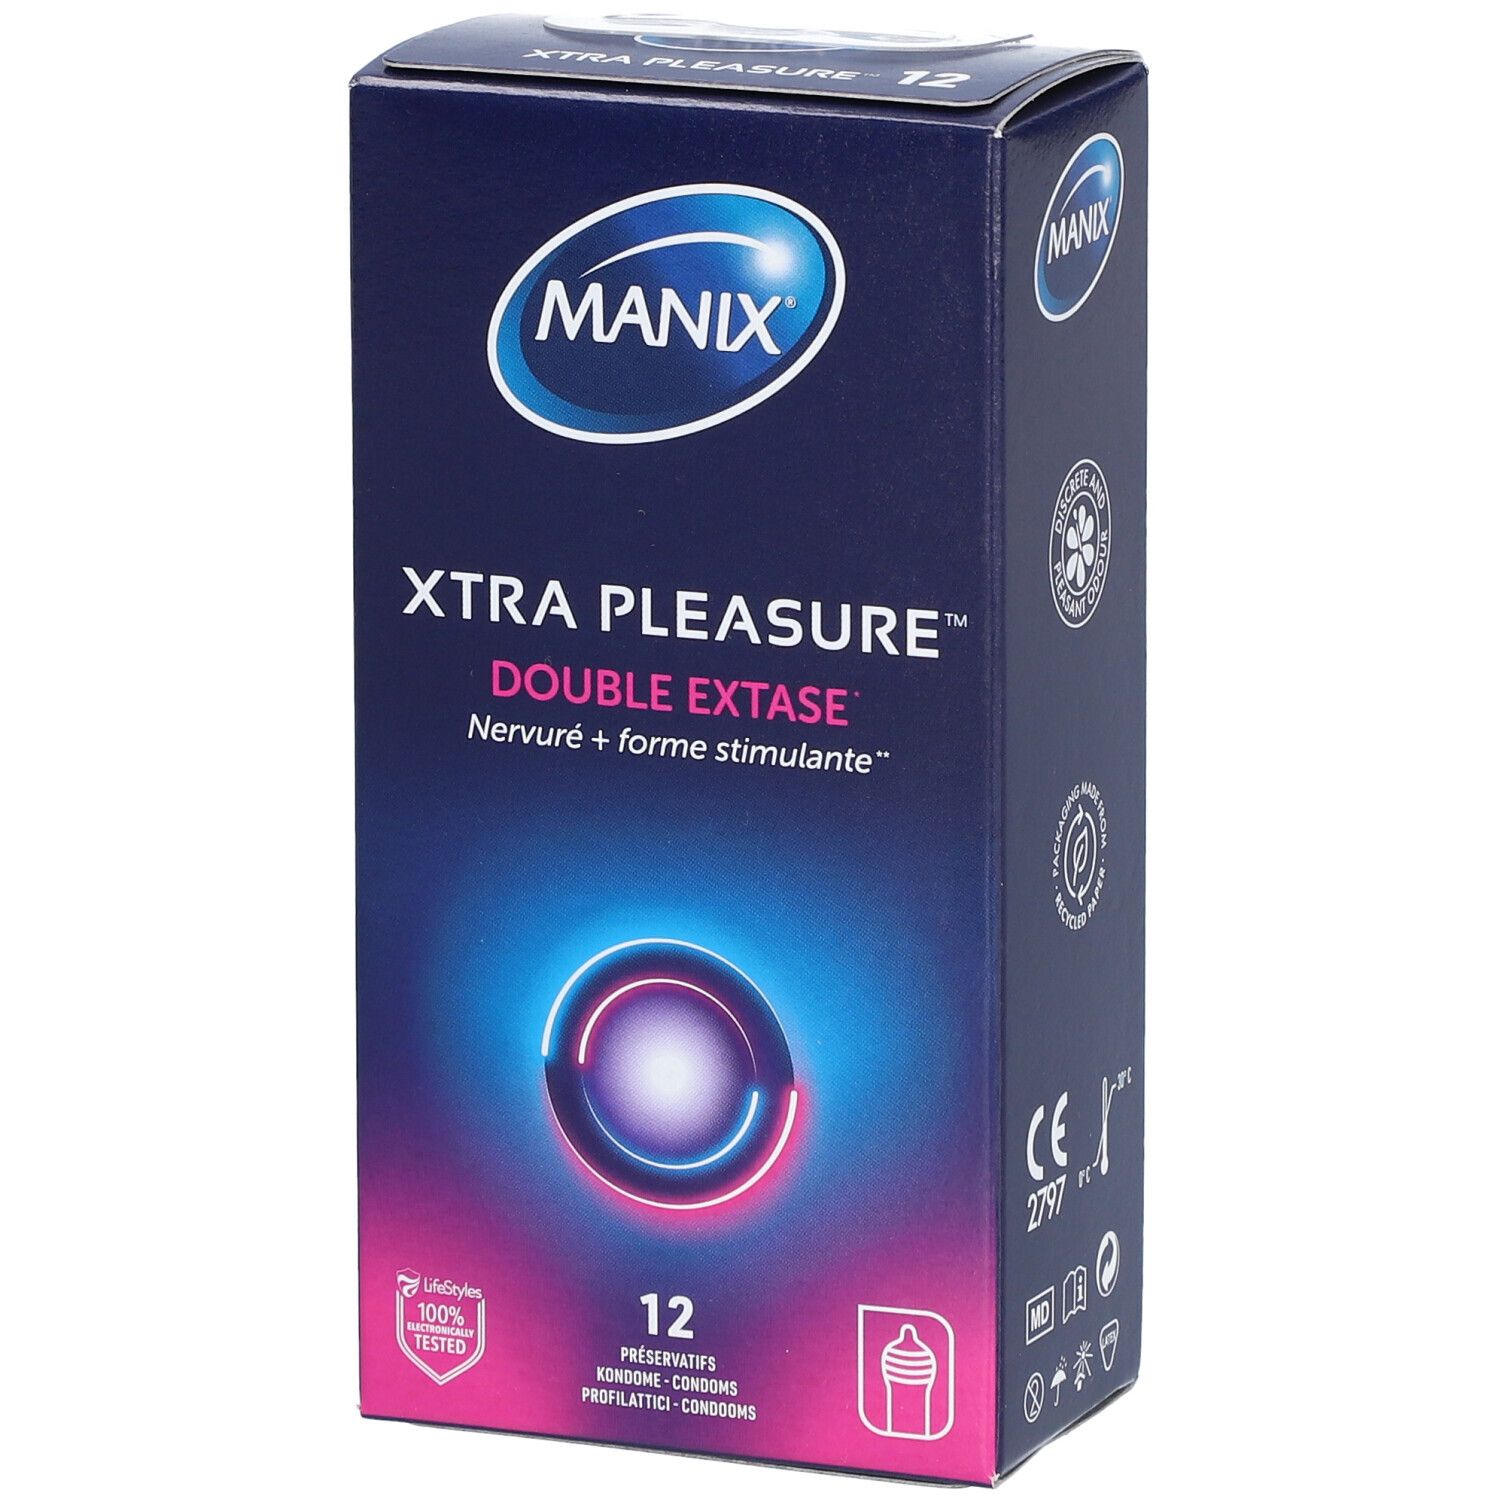 Manix® Xtra pleasure® Double extase